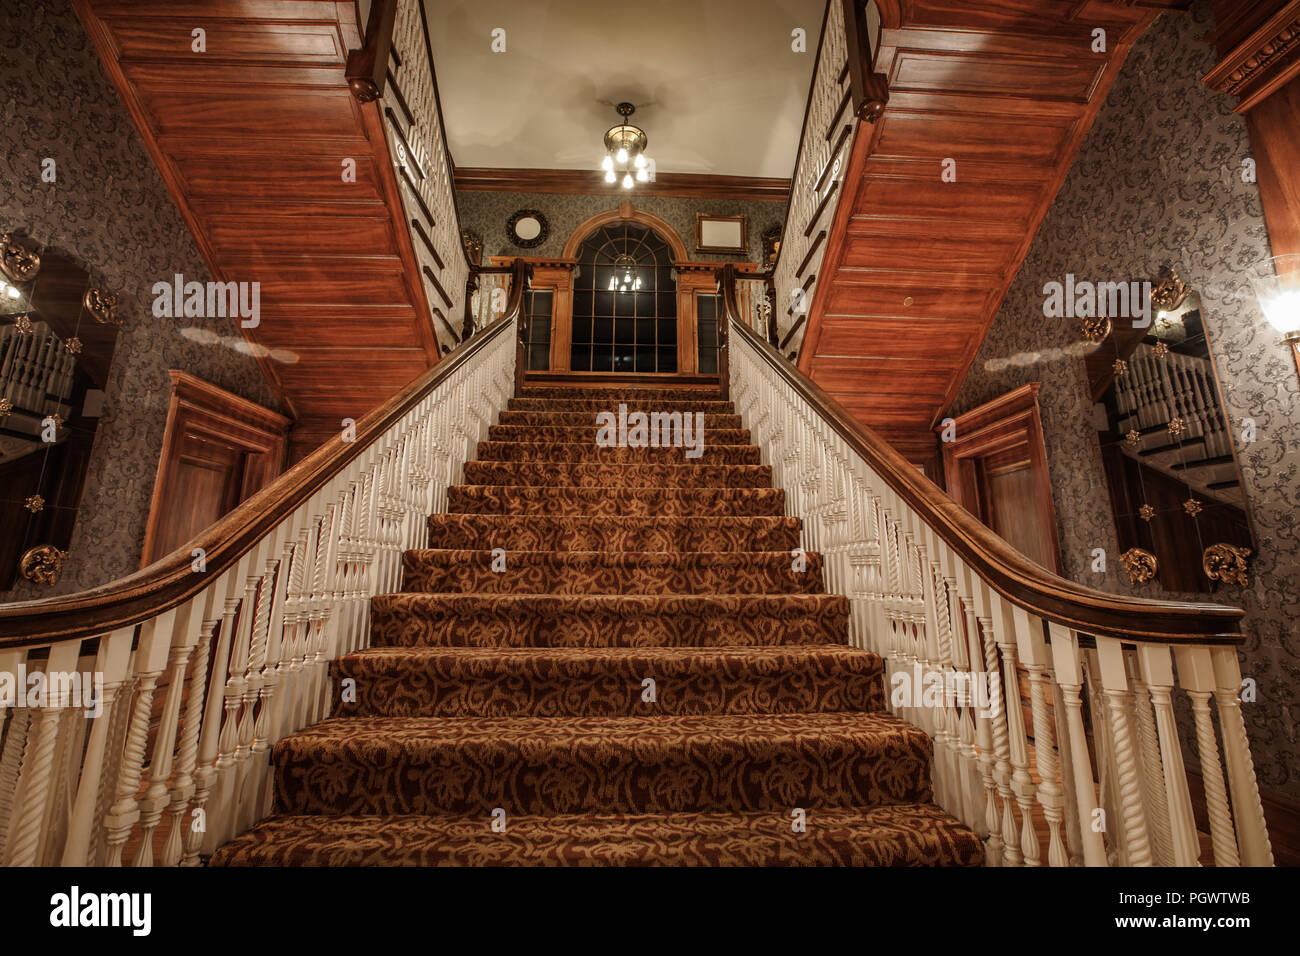 Dans l'escalier de l'Hôtel Stanley historique de Estes Park, Colorado. L' hôtel a été noté pour être l'inspiration pour le roman de Stephen King "The  Shining Photo Stock - Alamy